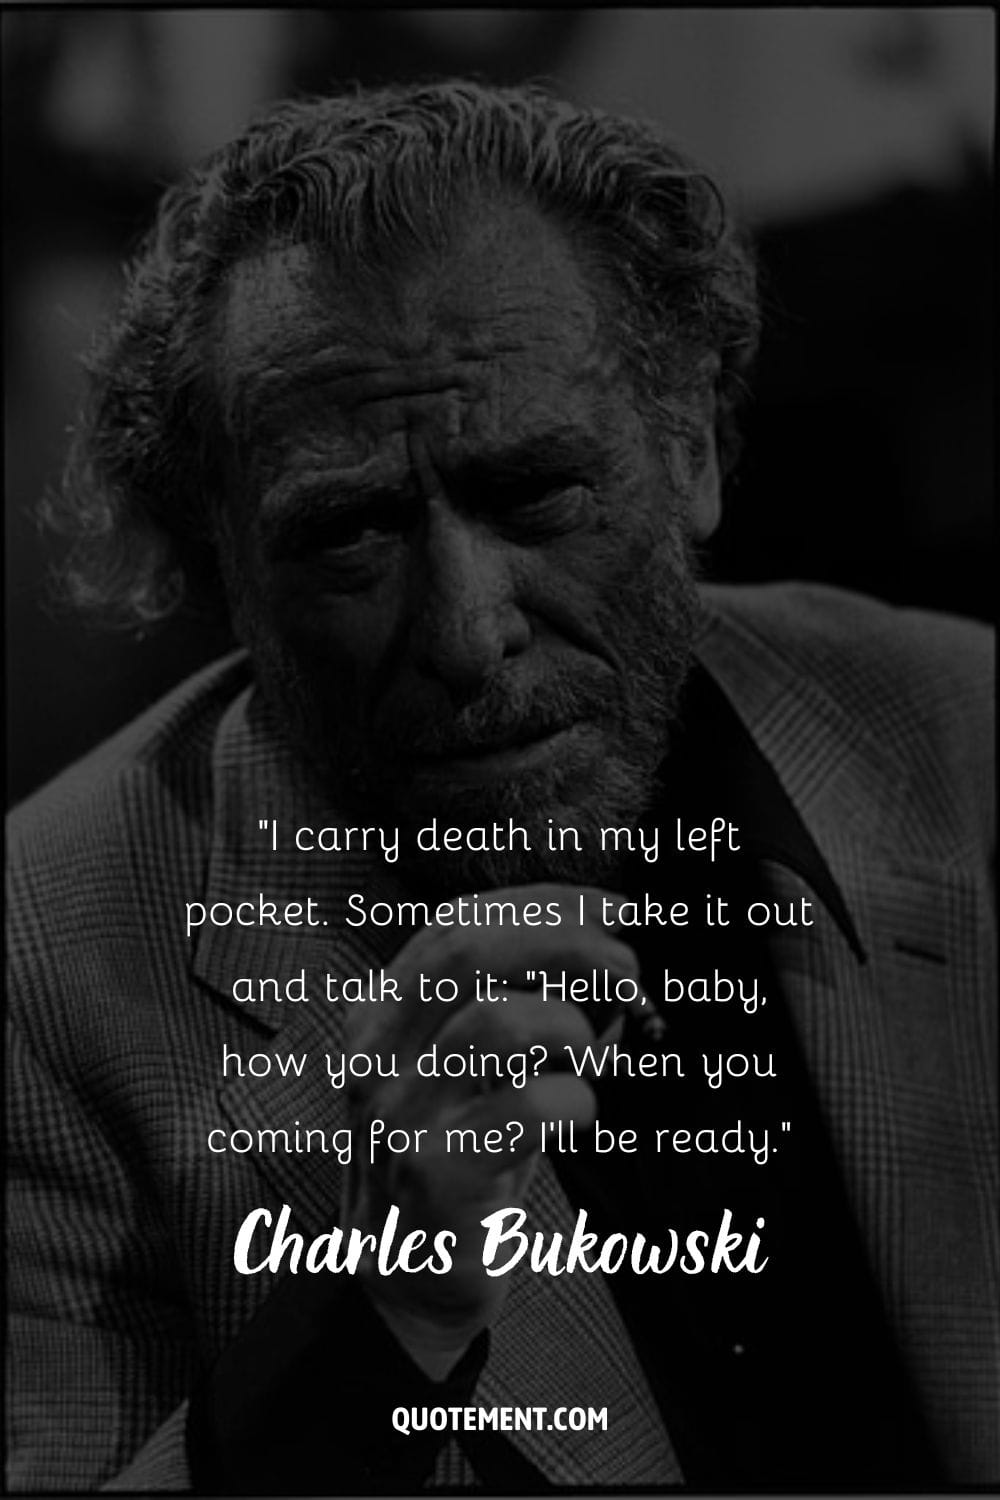 suited Charles Bukowski, cigarette poised